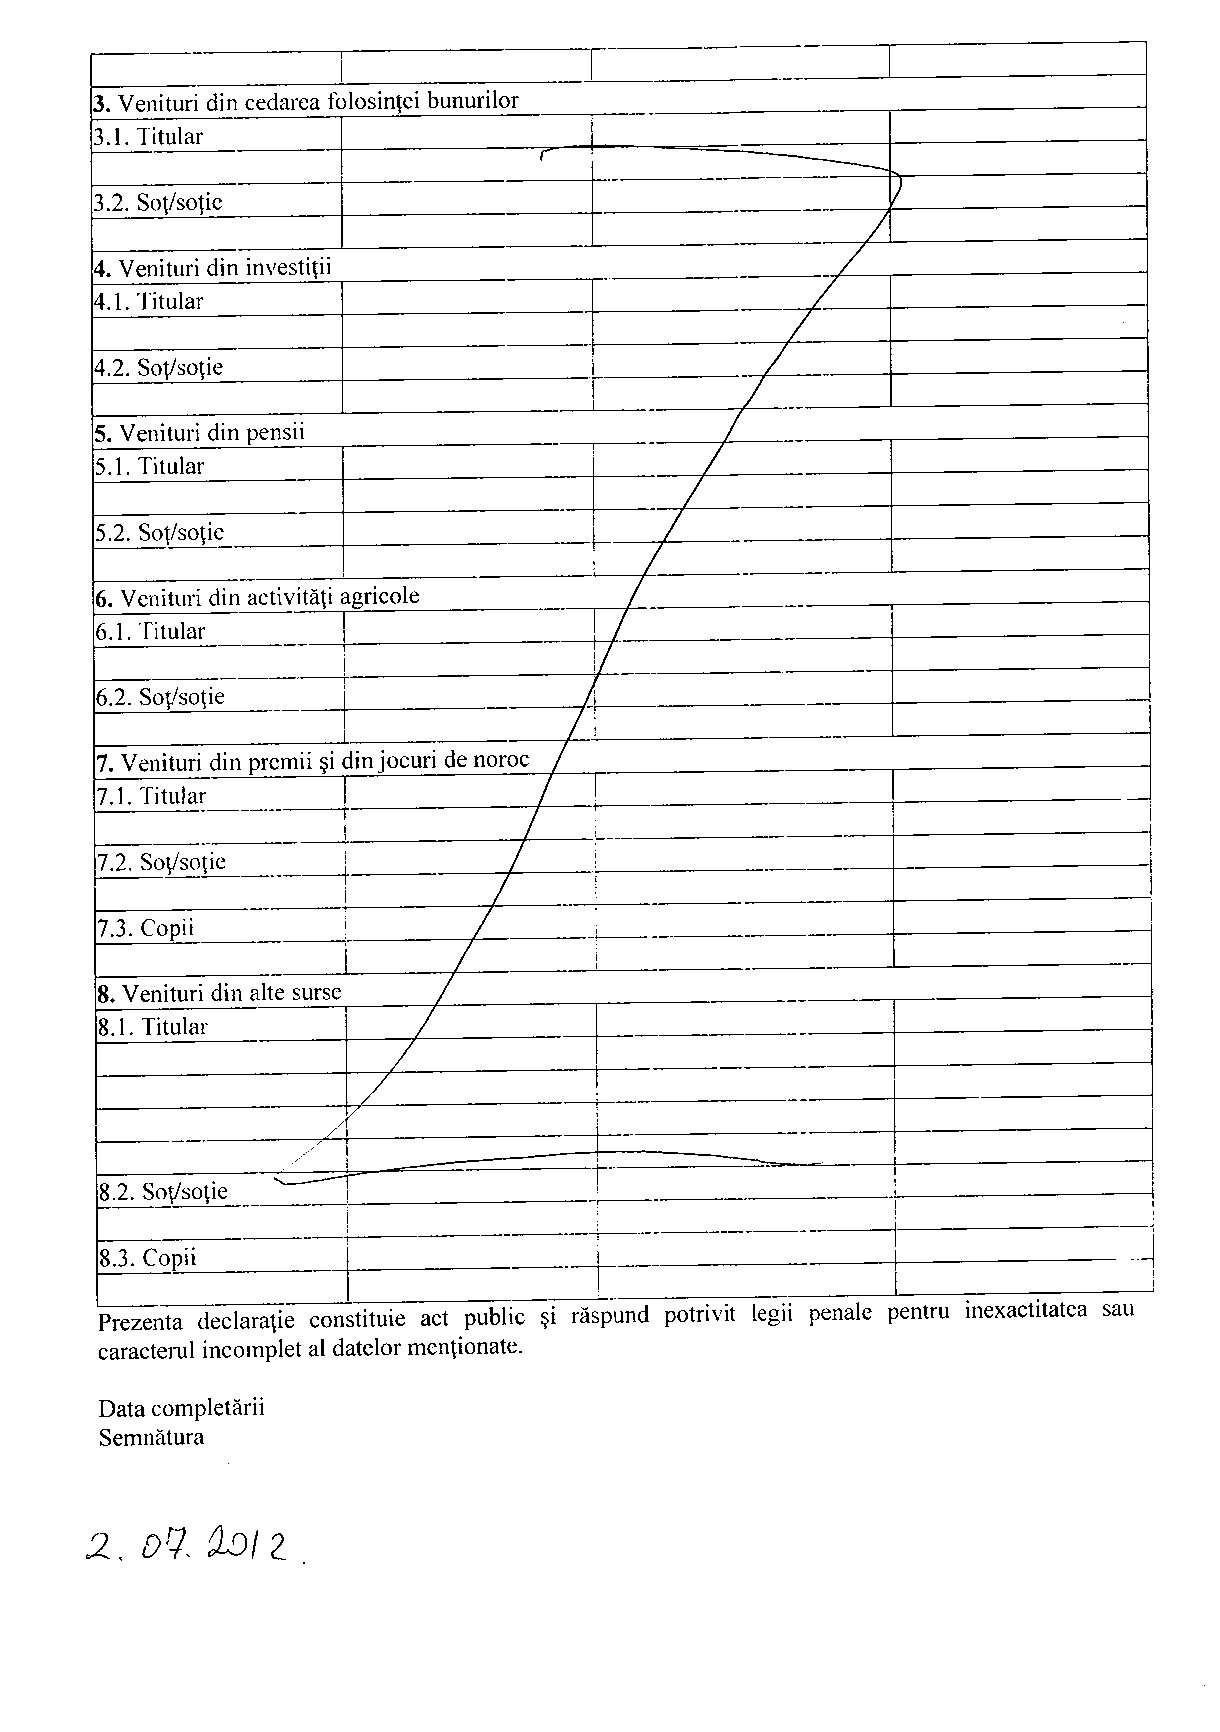 Declaratia de avere si de interese din data 12.07.2012 - pagina 4 din 6